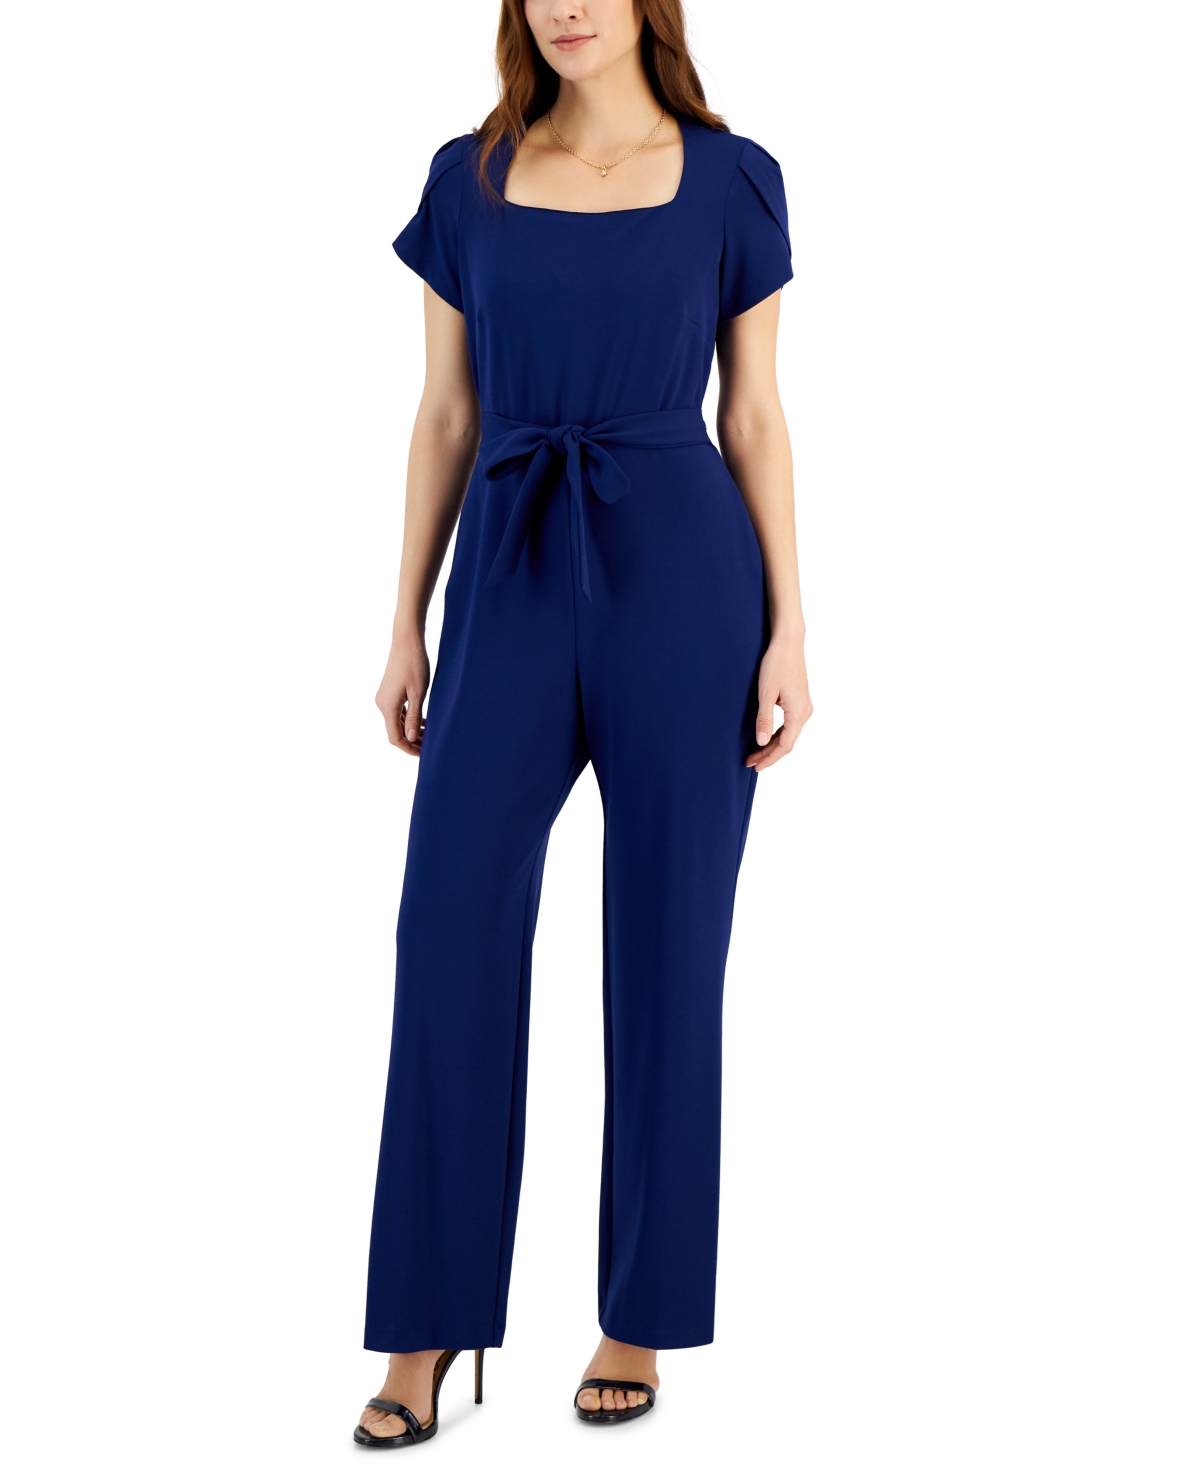 Women's Petal-Sleeve Tie-Waist Square-Neck Jumpsuit - Deep Blue